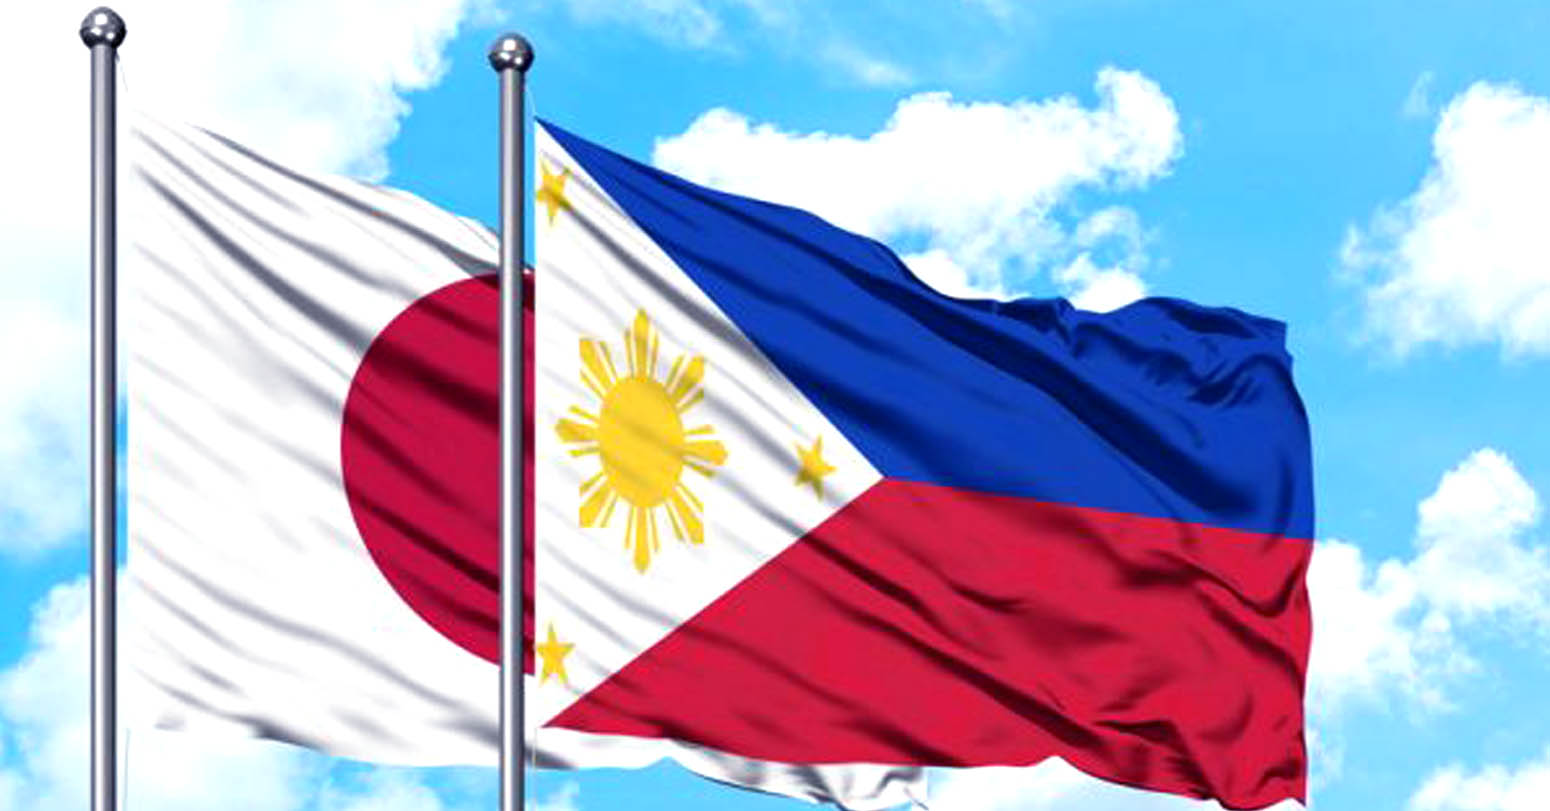 जापान र फिलिपिन्सबीच रक्षा सम्झौतामा हस्ताक्षर